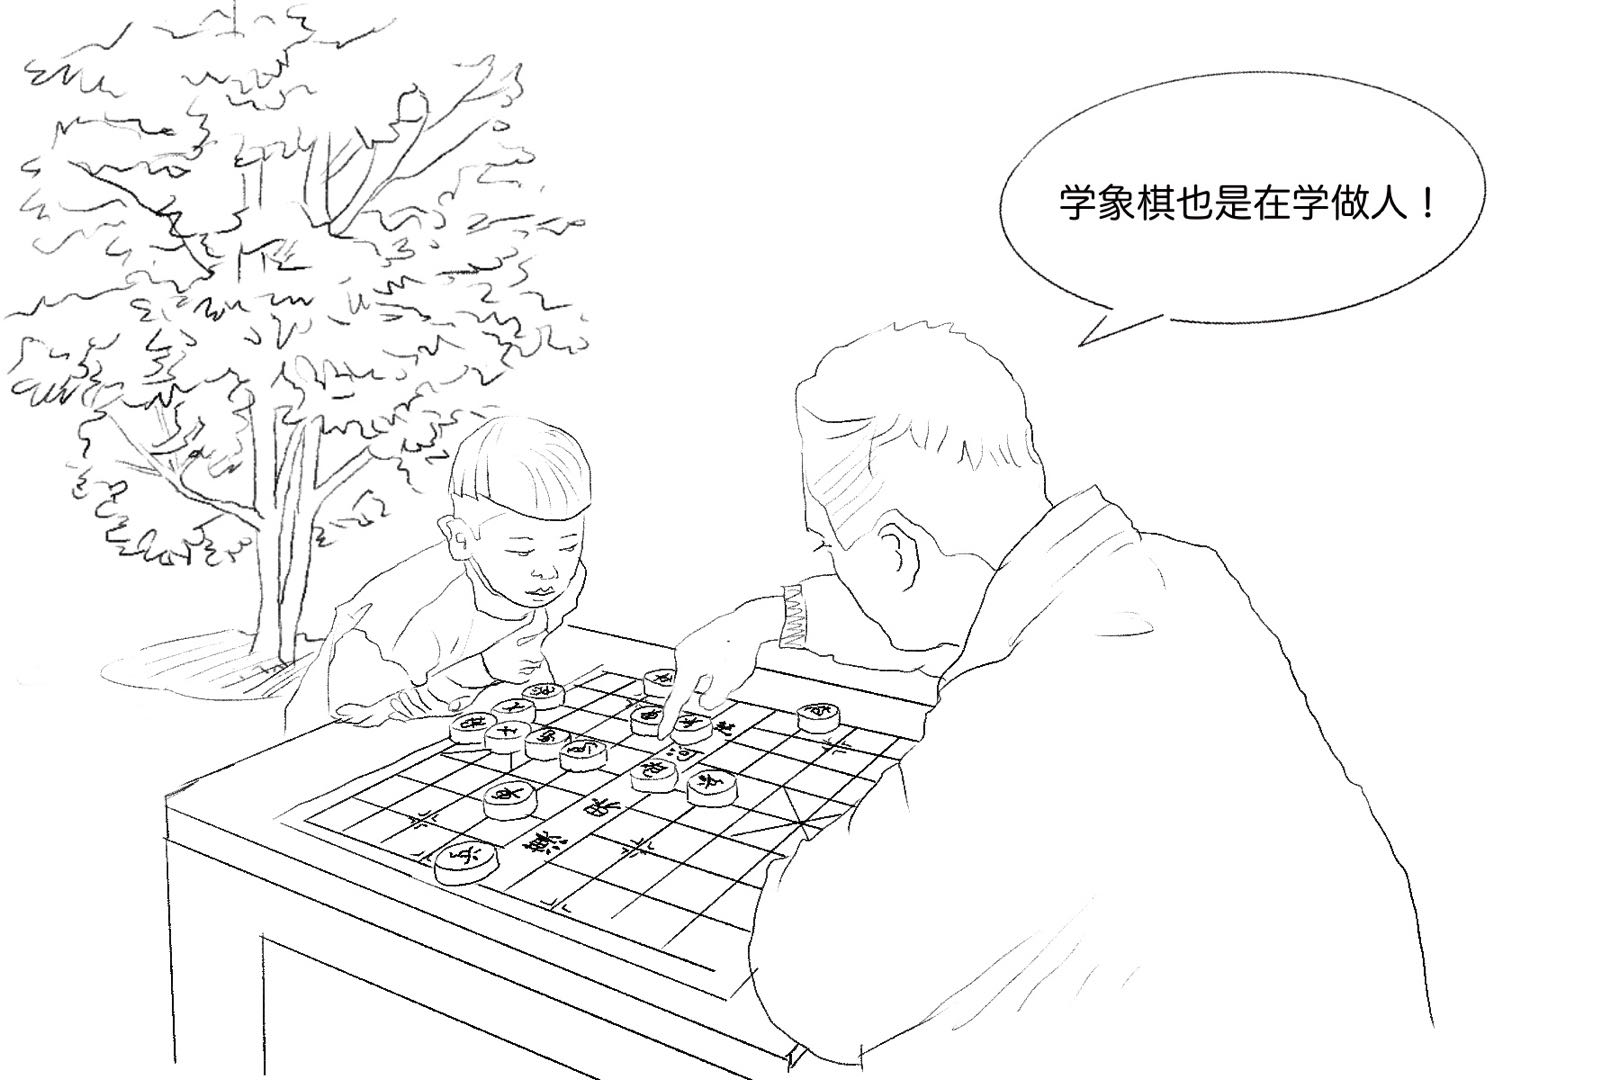 两个人在下象棋简笔画图片